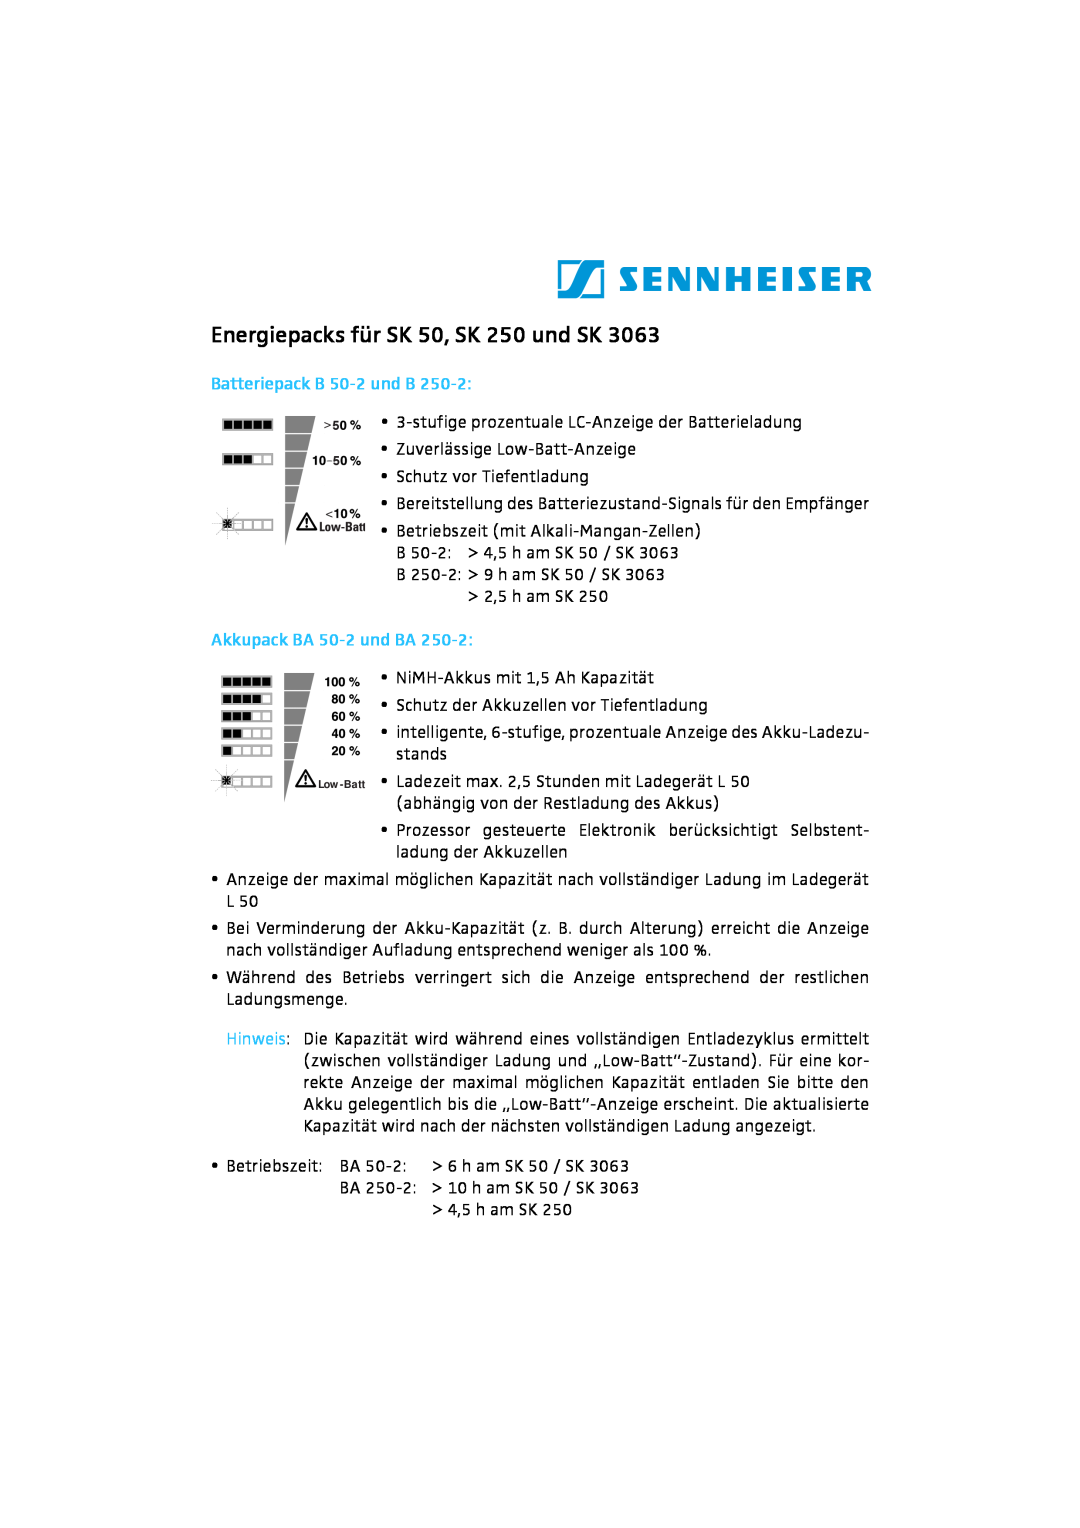 Sennheiser SK 3063 manual Energiepacks für SK 50, SK 250 und SK, Batteriepack B 50-2und B, Akkupack BA 50-2und BA 